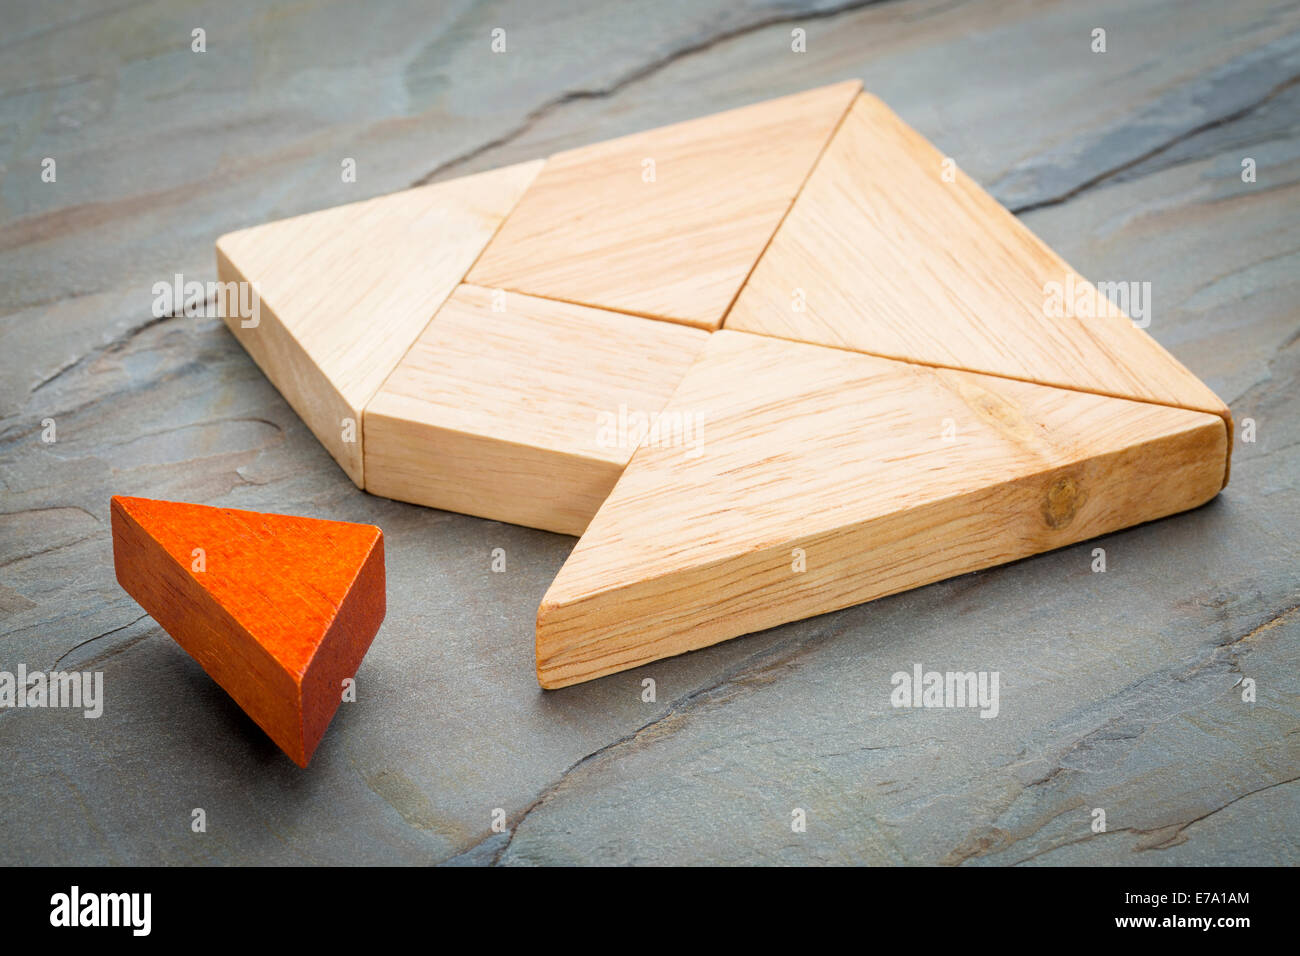 ein fehlendes Stück in einem Quadrat von Tangram-Formen, ein traditionelles chinesisches Puzzlespiel, Schiefer Felsen Hintergrund gebaut Stockfoto